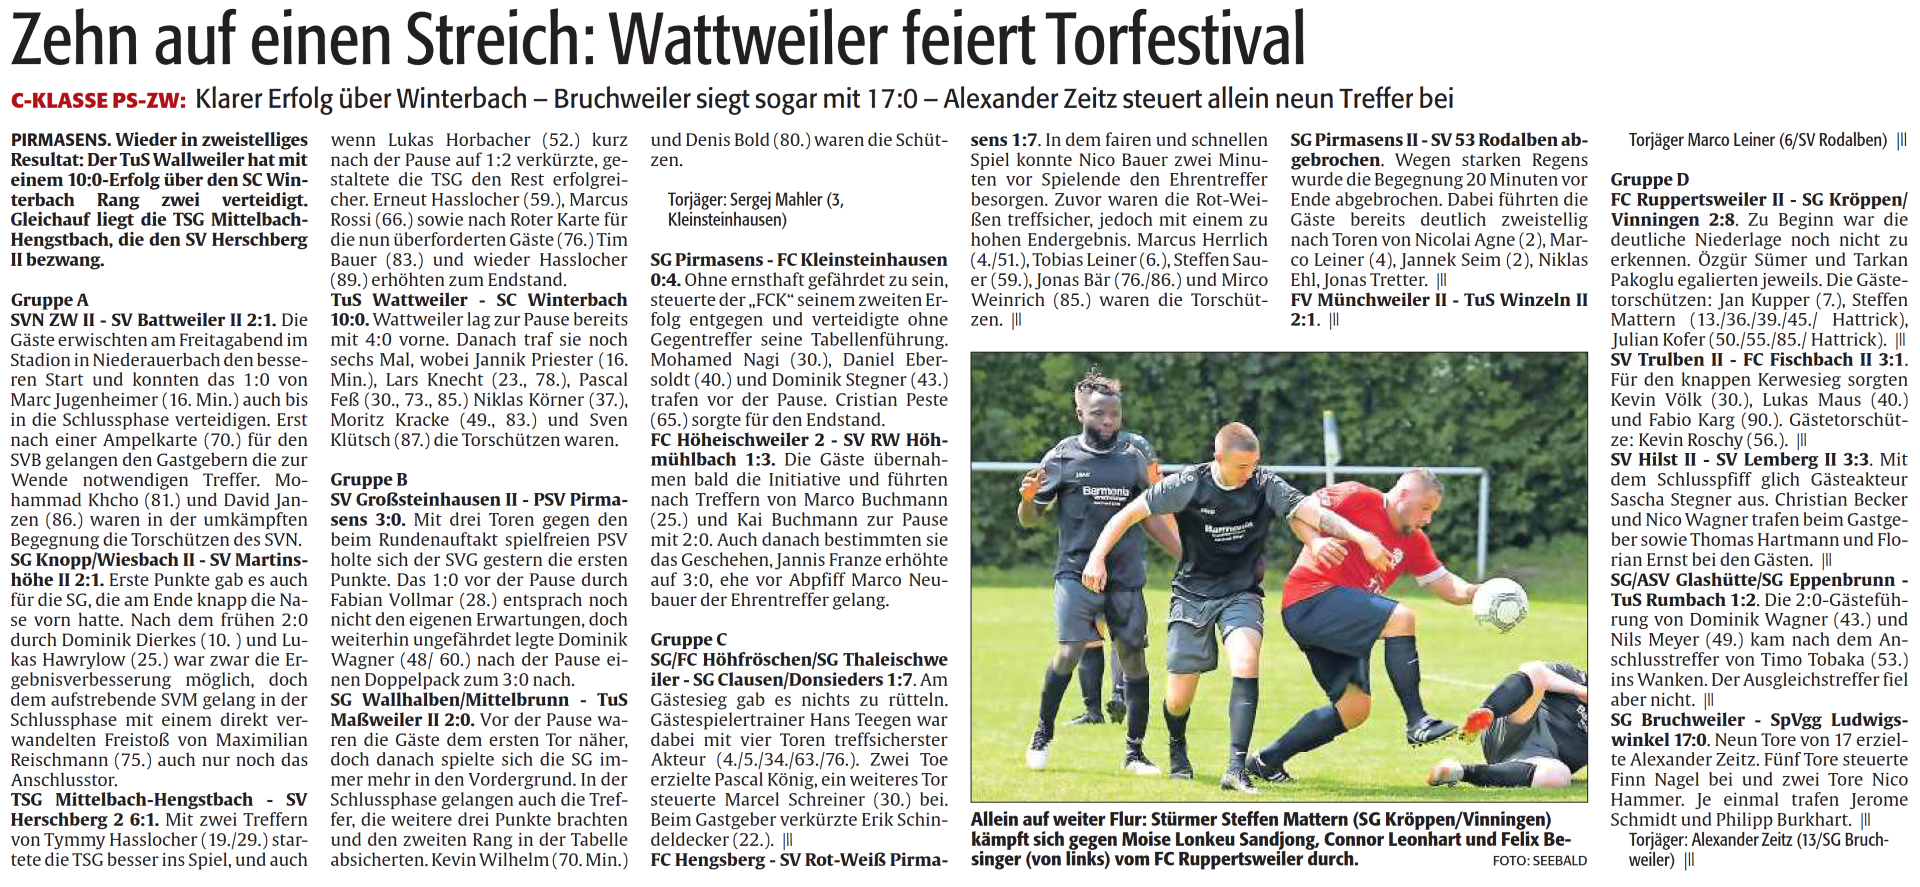 Zehn auf einen Streich: Wattweiler feiert Torfestival